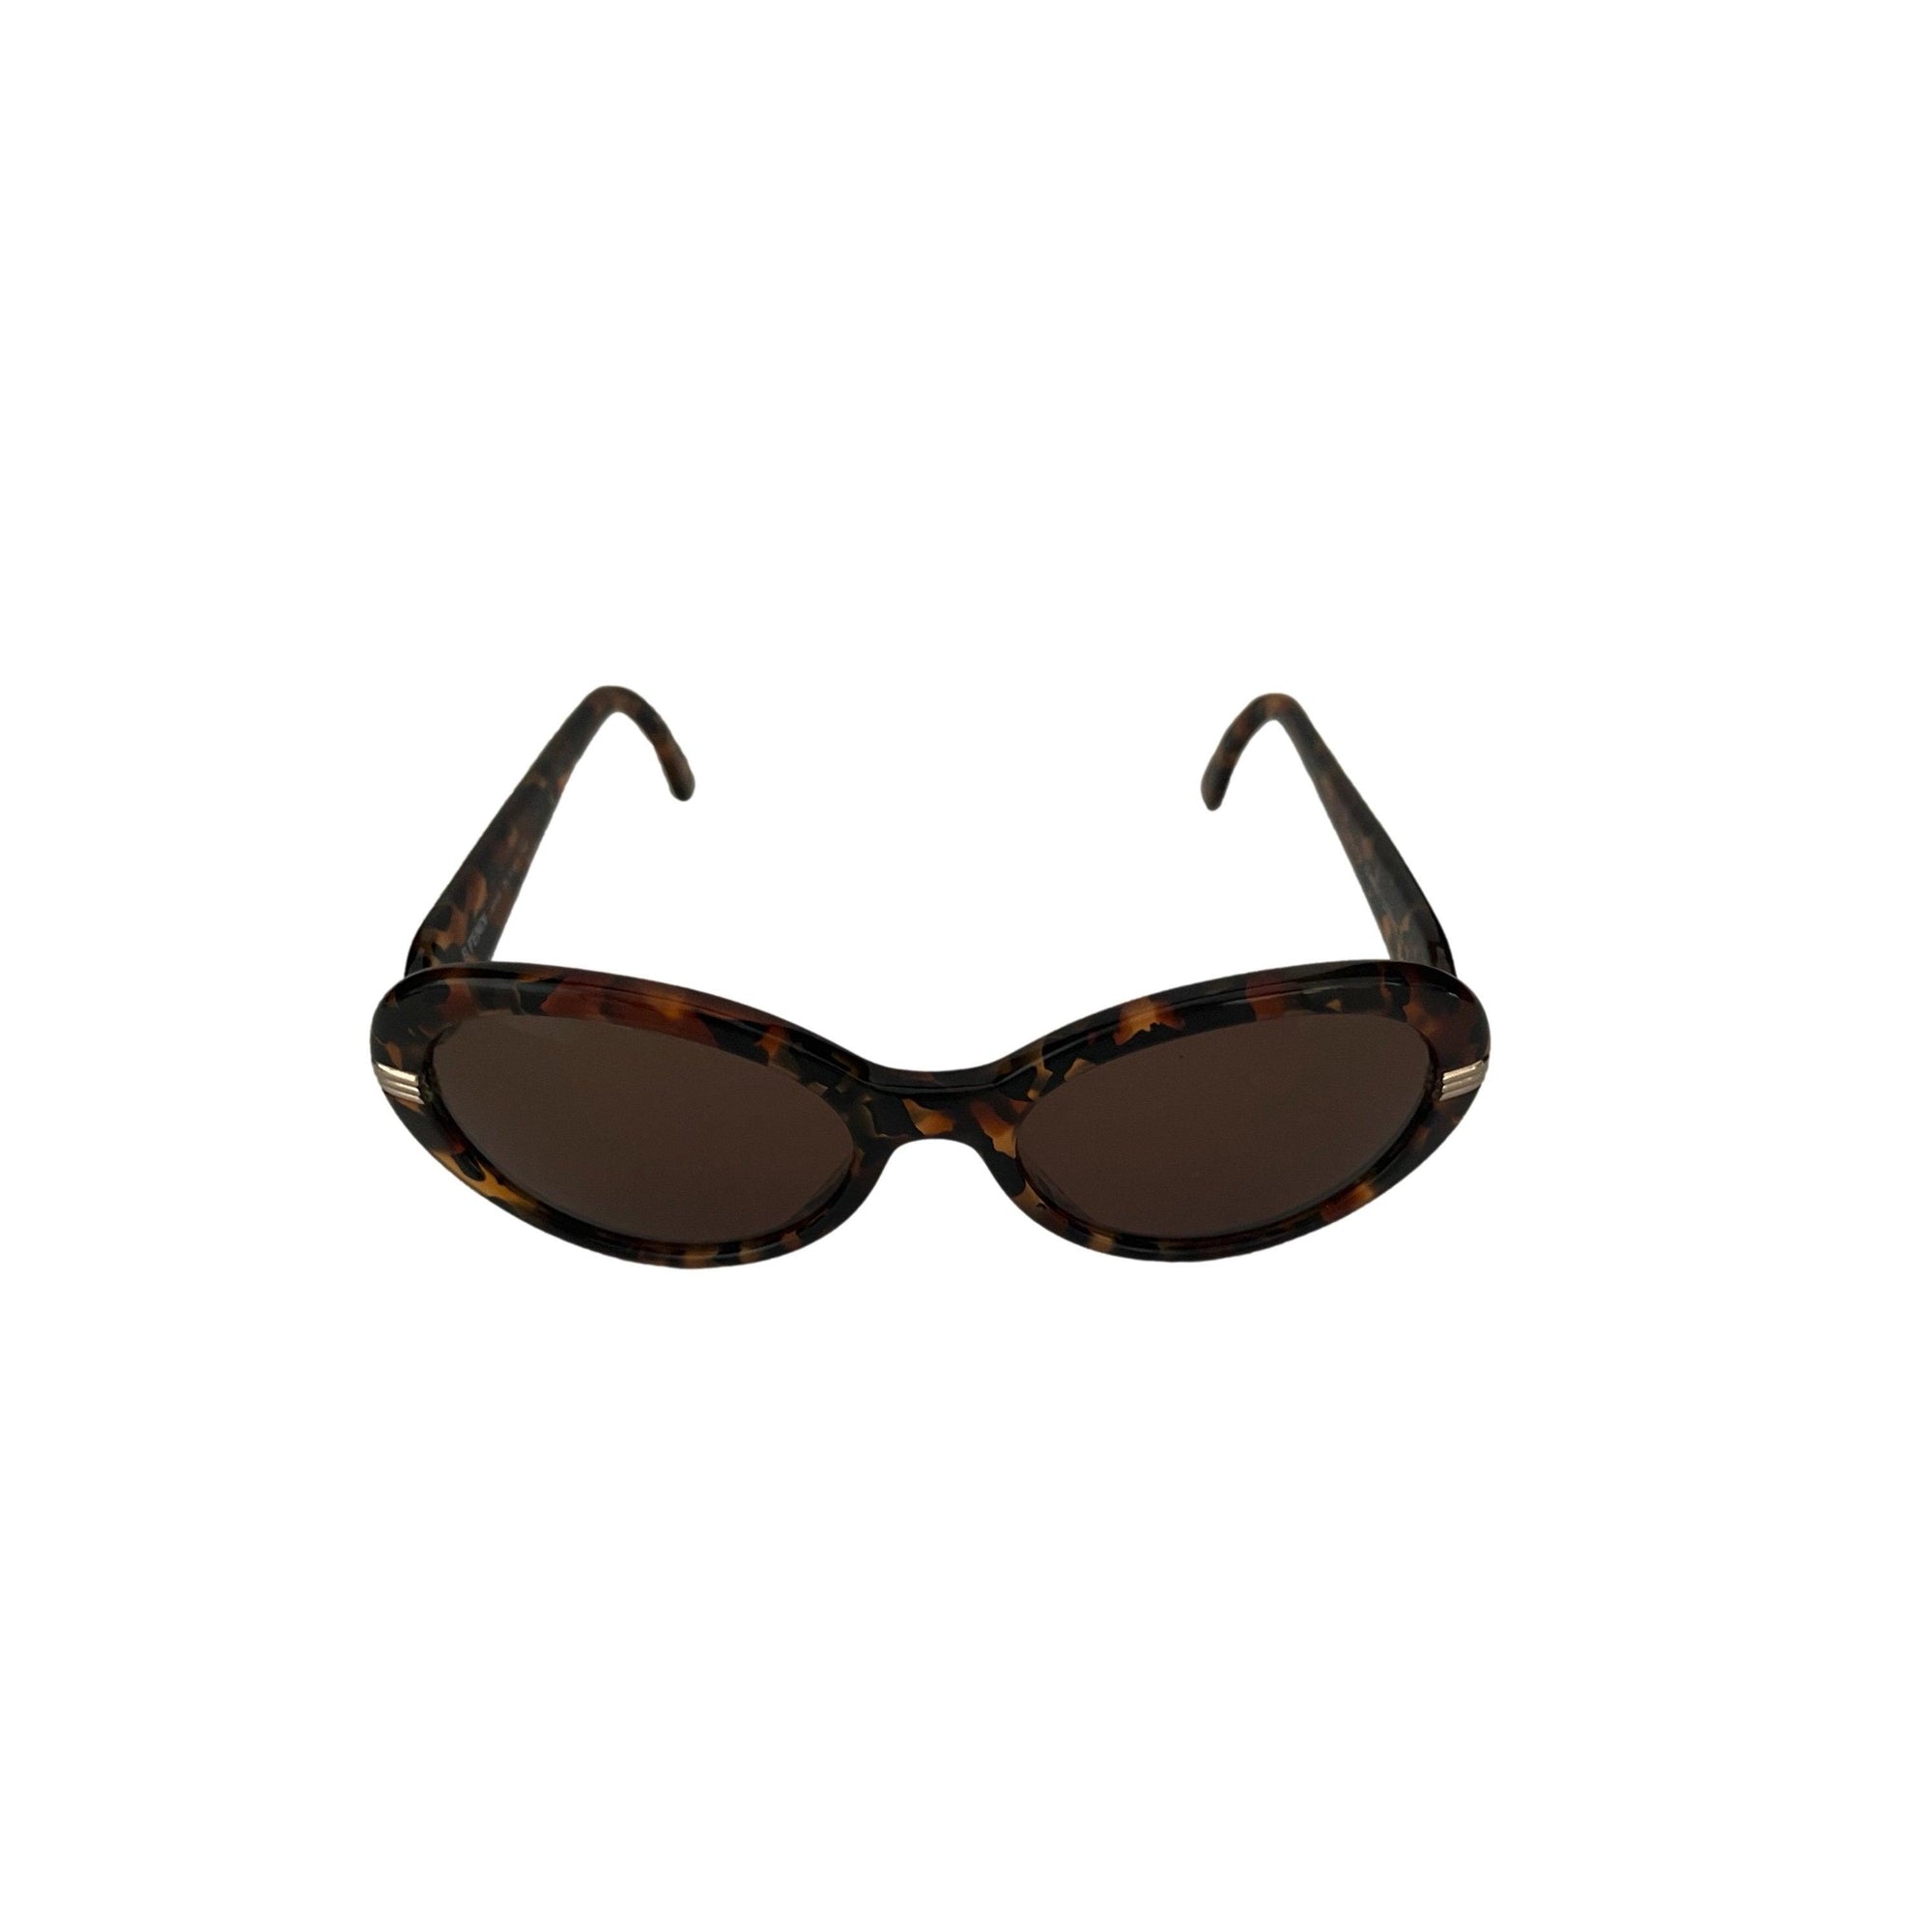 Fendi Tortoise Round Sunglasses - Sunglasses